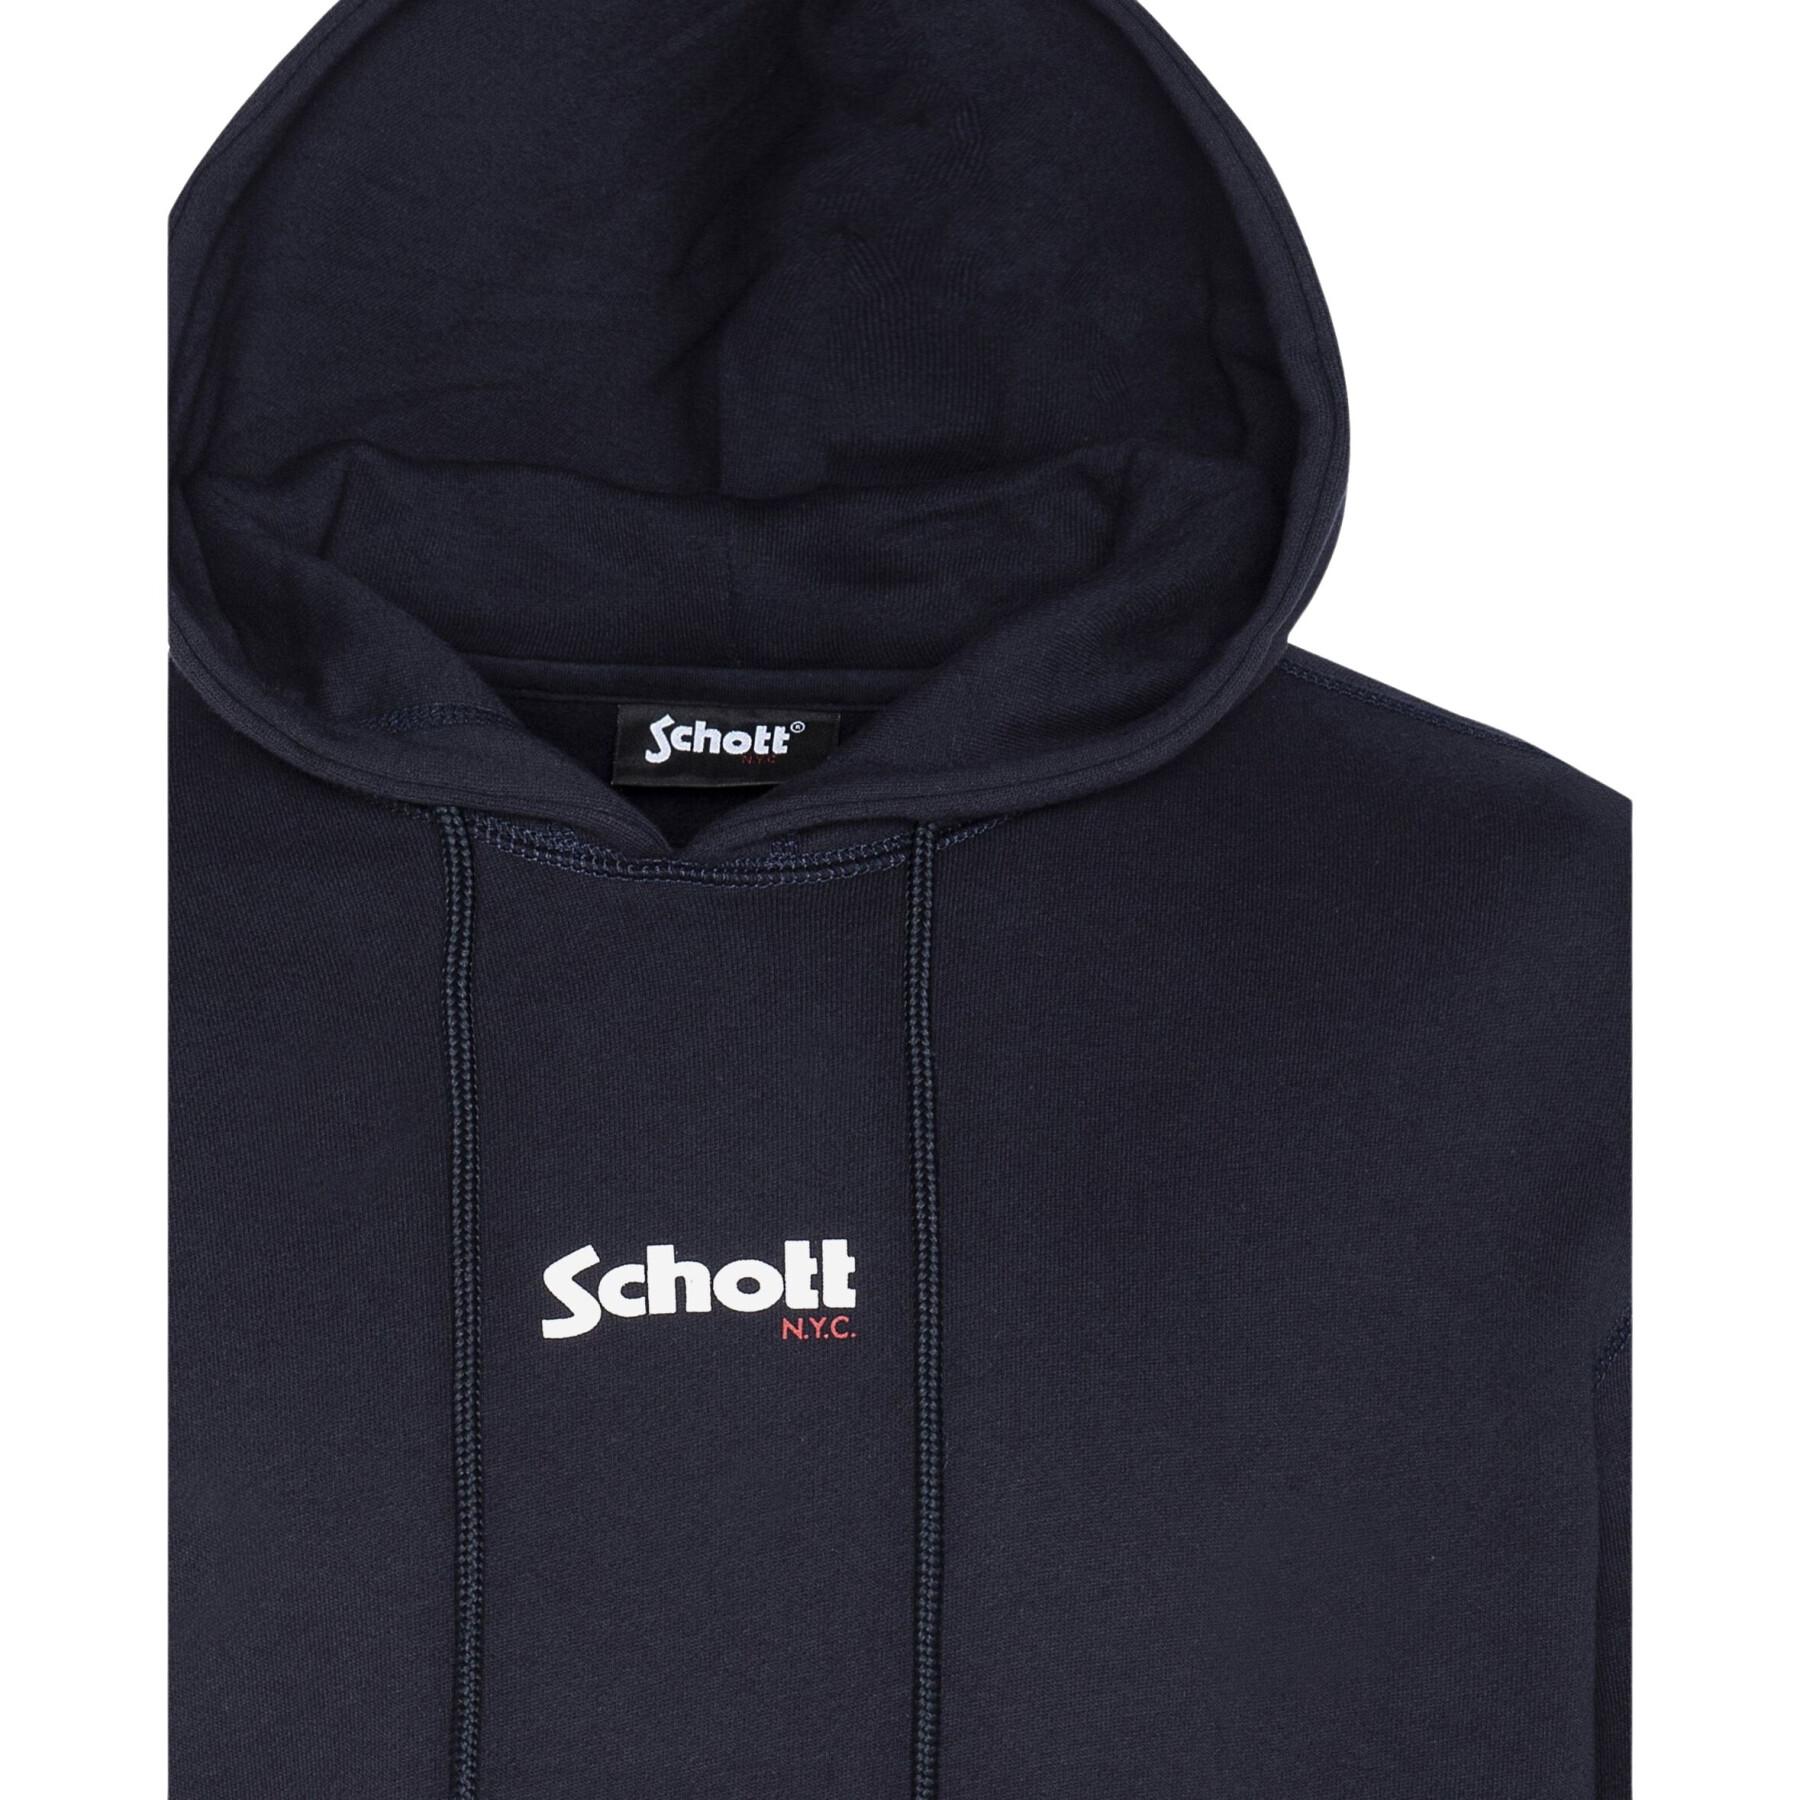 Blusa de moletom com capuz e pequeno logotipo Schott